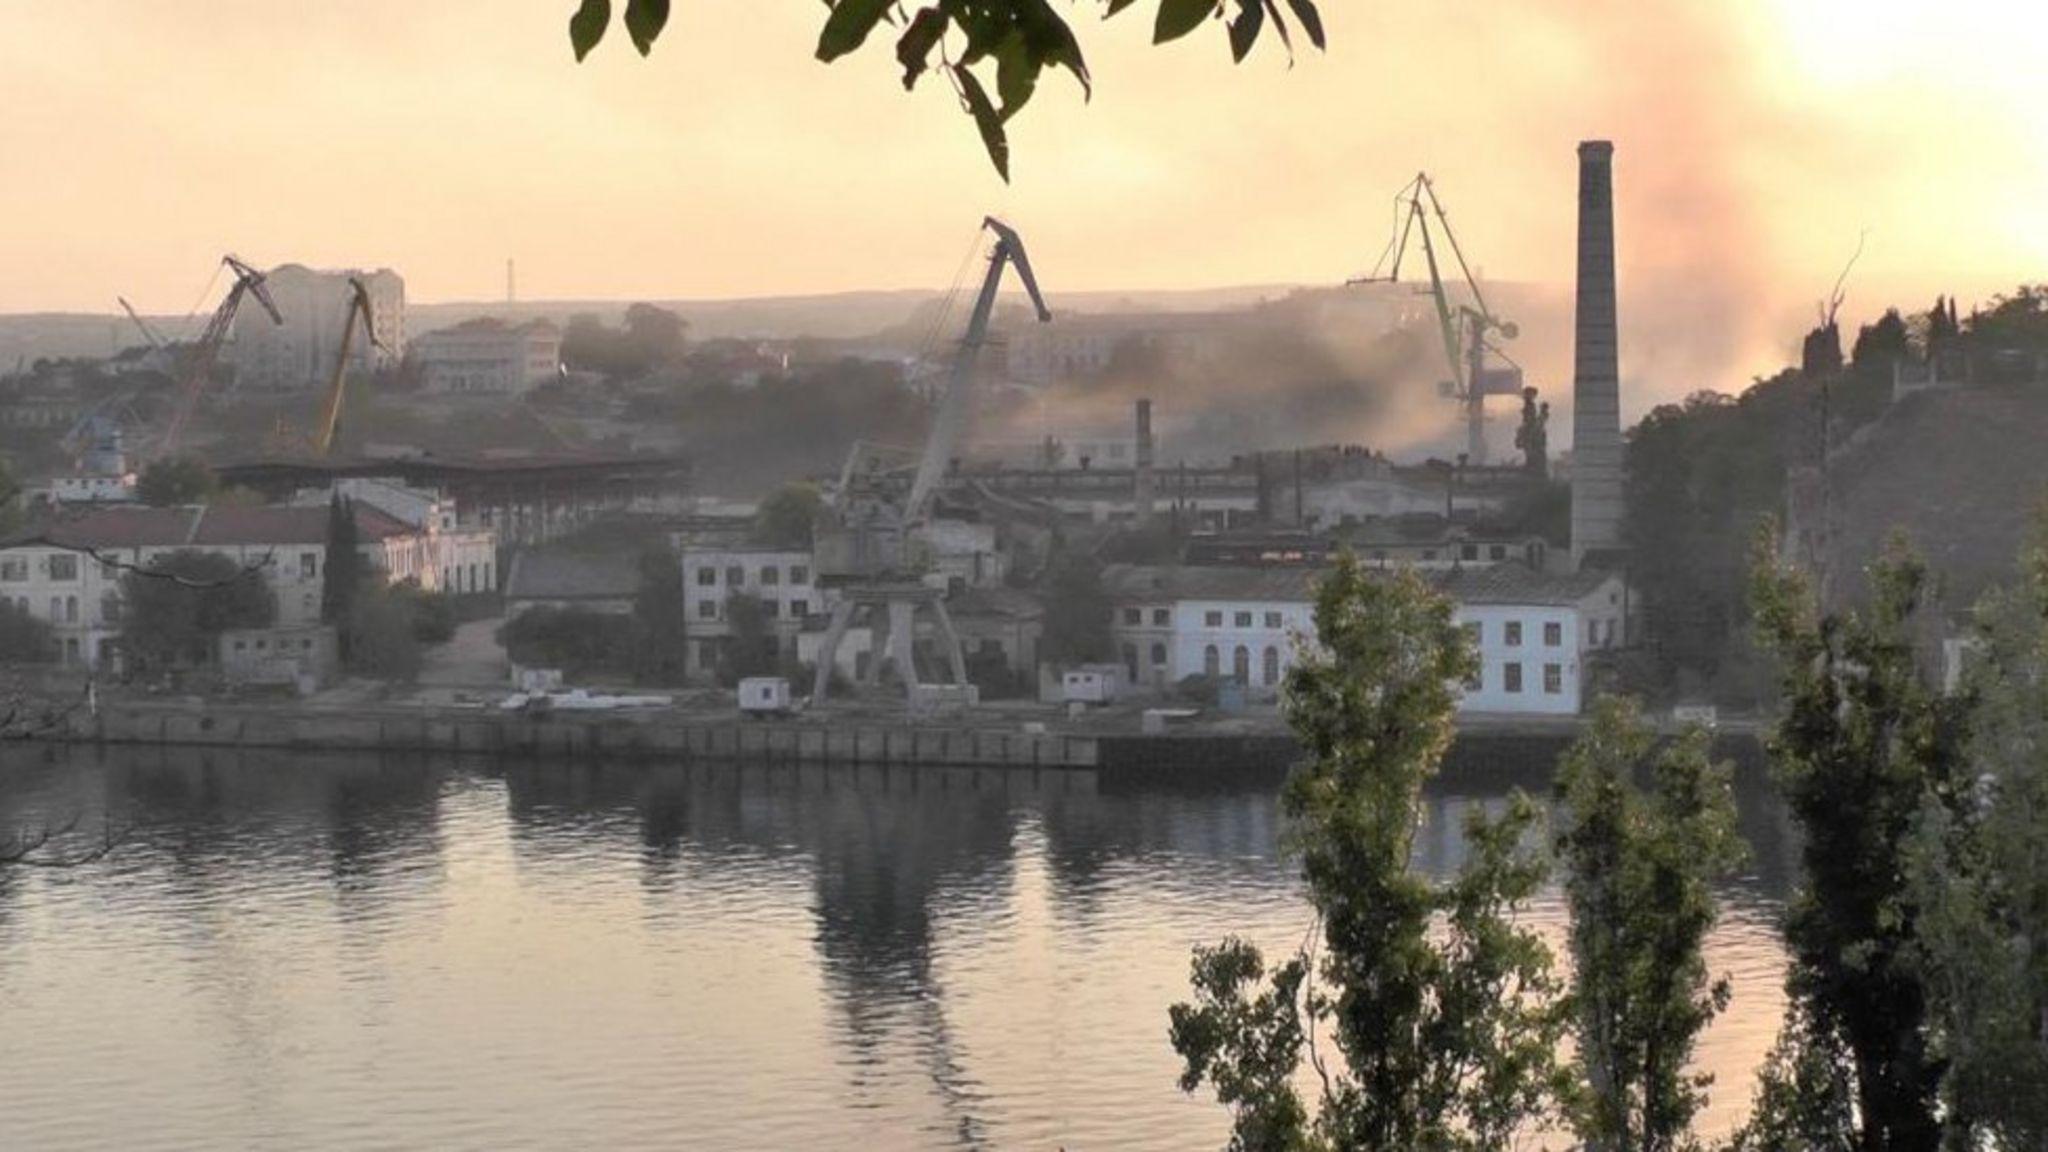 Sale humo de un astillero en el puerto de Sebastopol en Crimea, controlado por Rusia